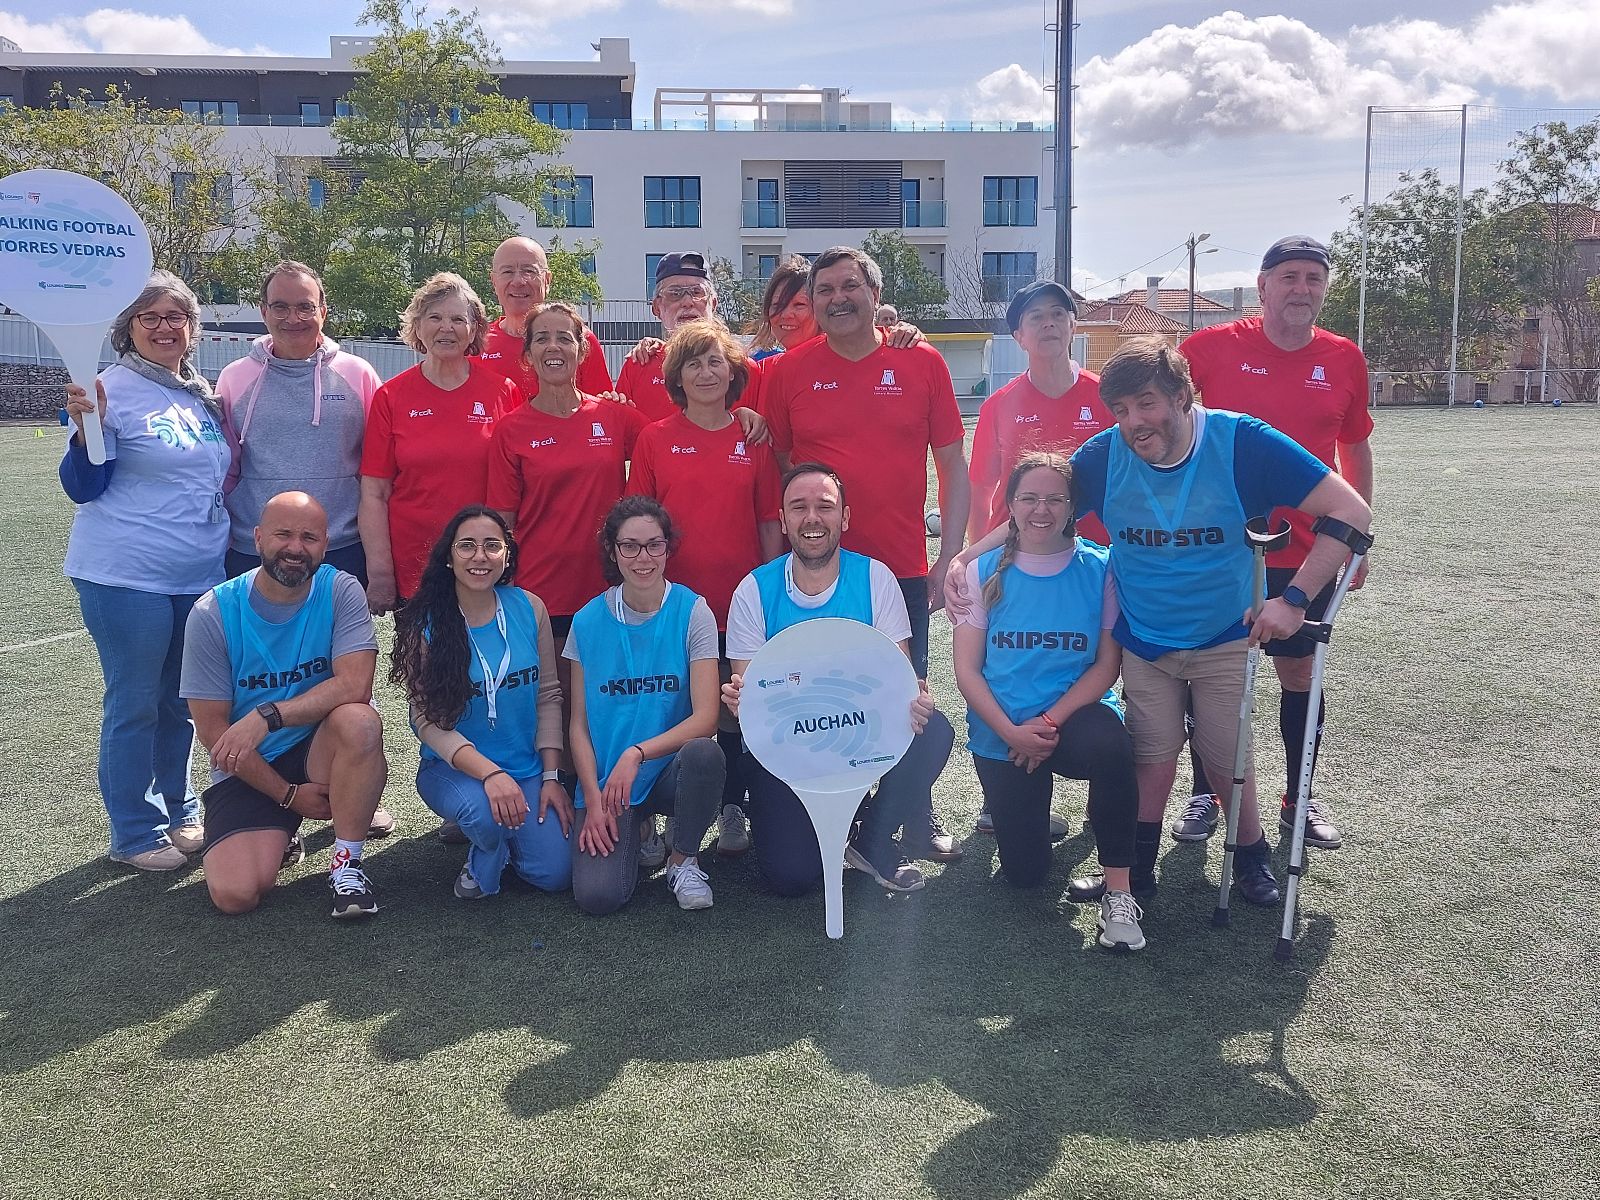 Auchan apoia a RUTIS na promoção do Walking Football, um “novo” desporto mais inclusivo